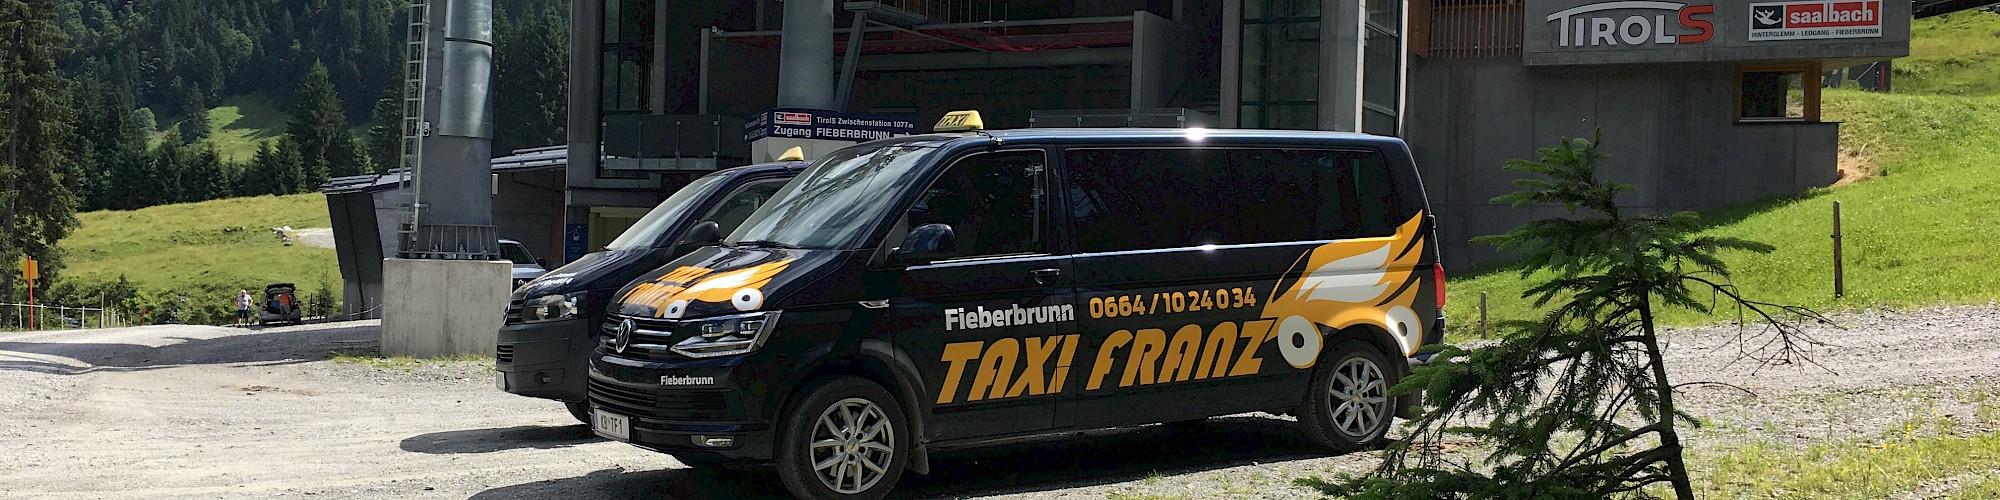 Taxi Franz Ltd.